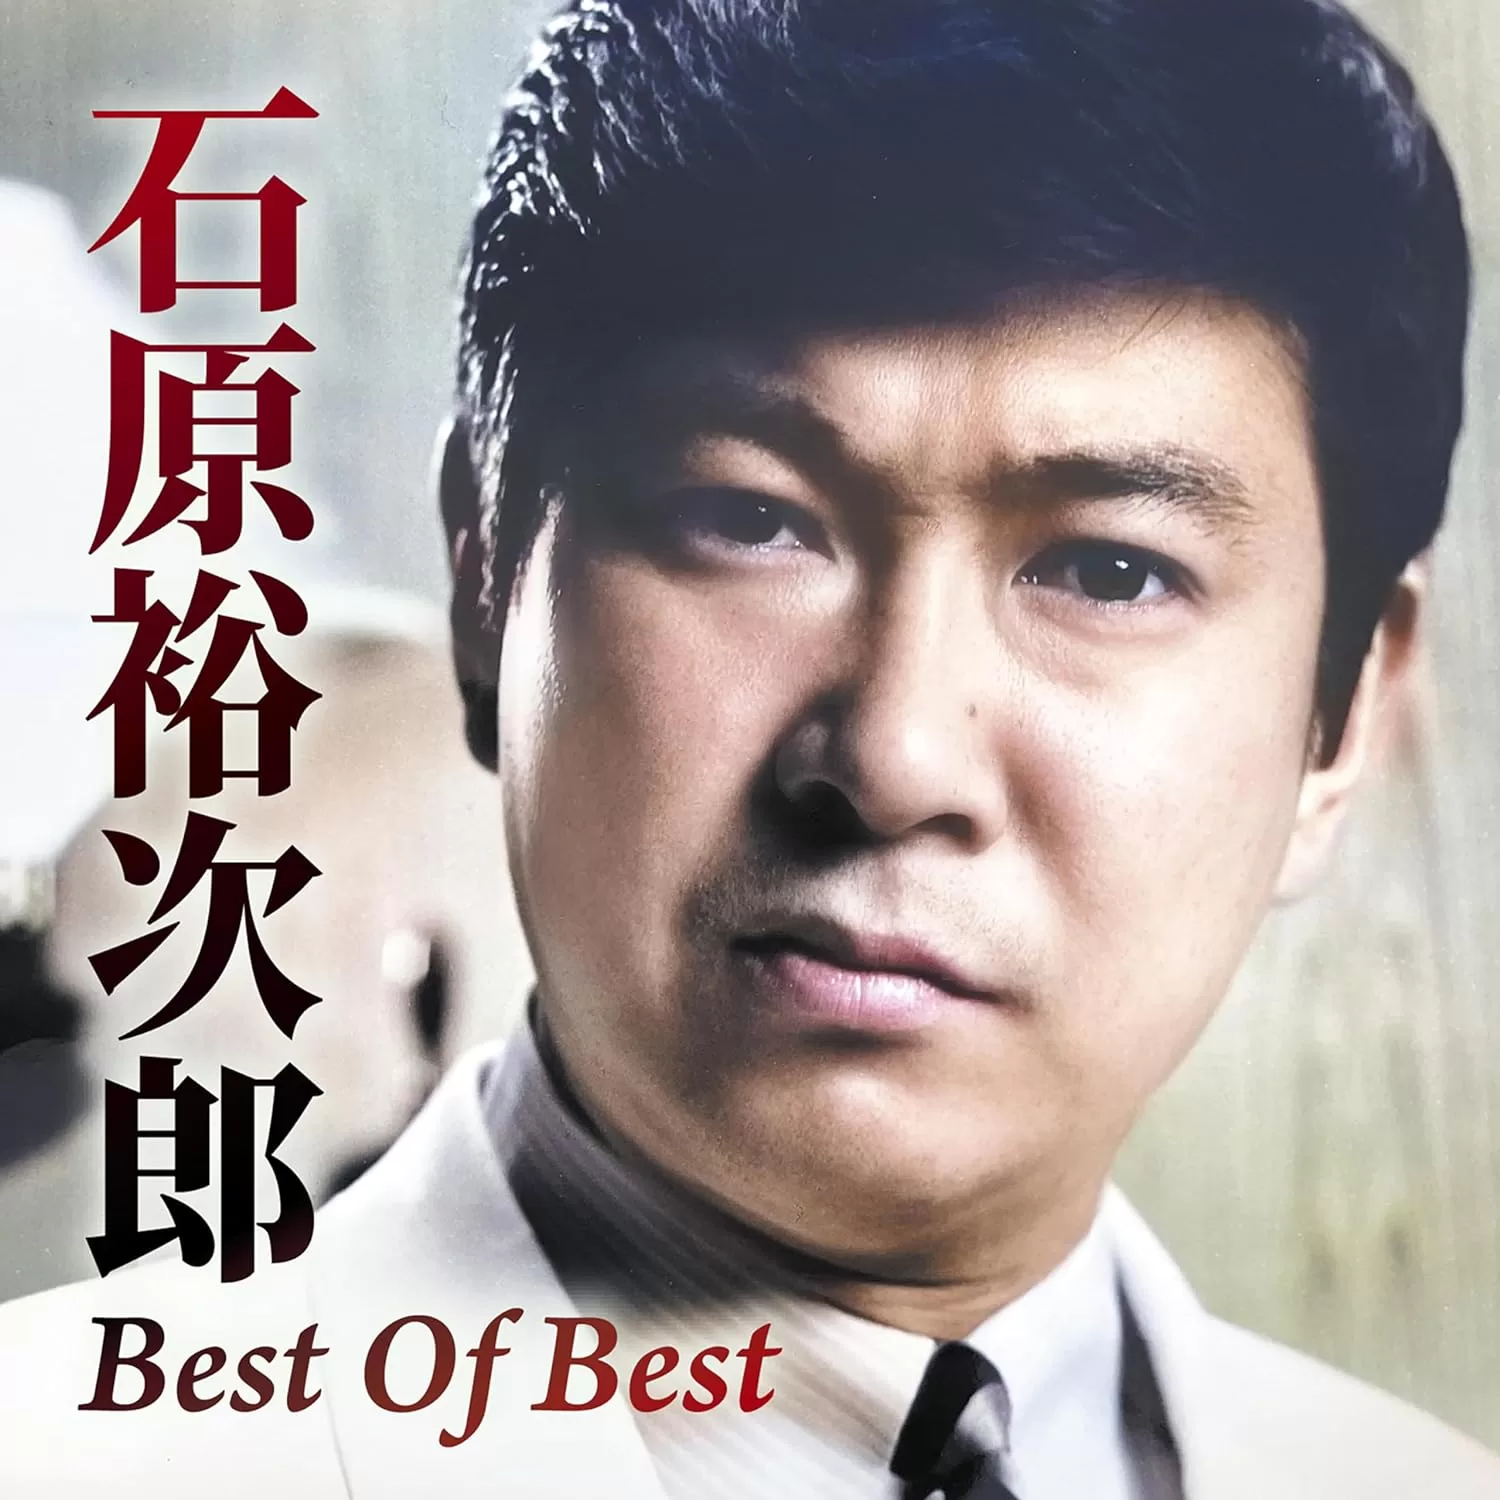 石原裕次郎 - Best Of Best